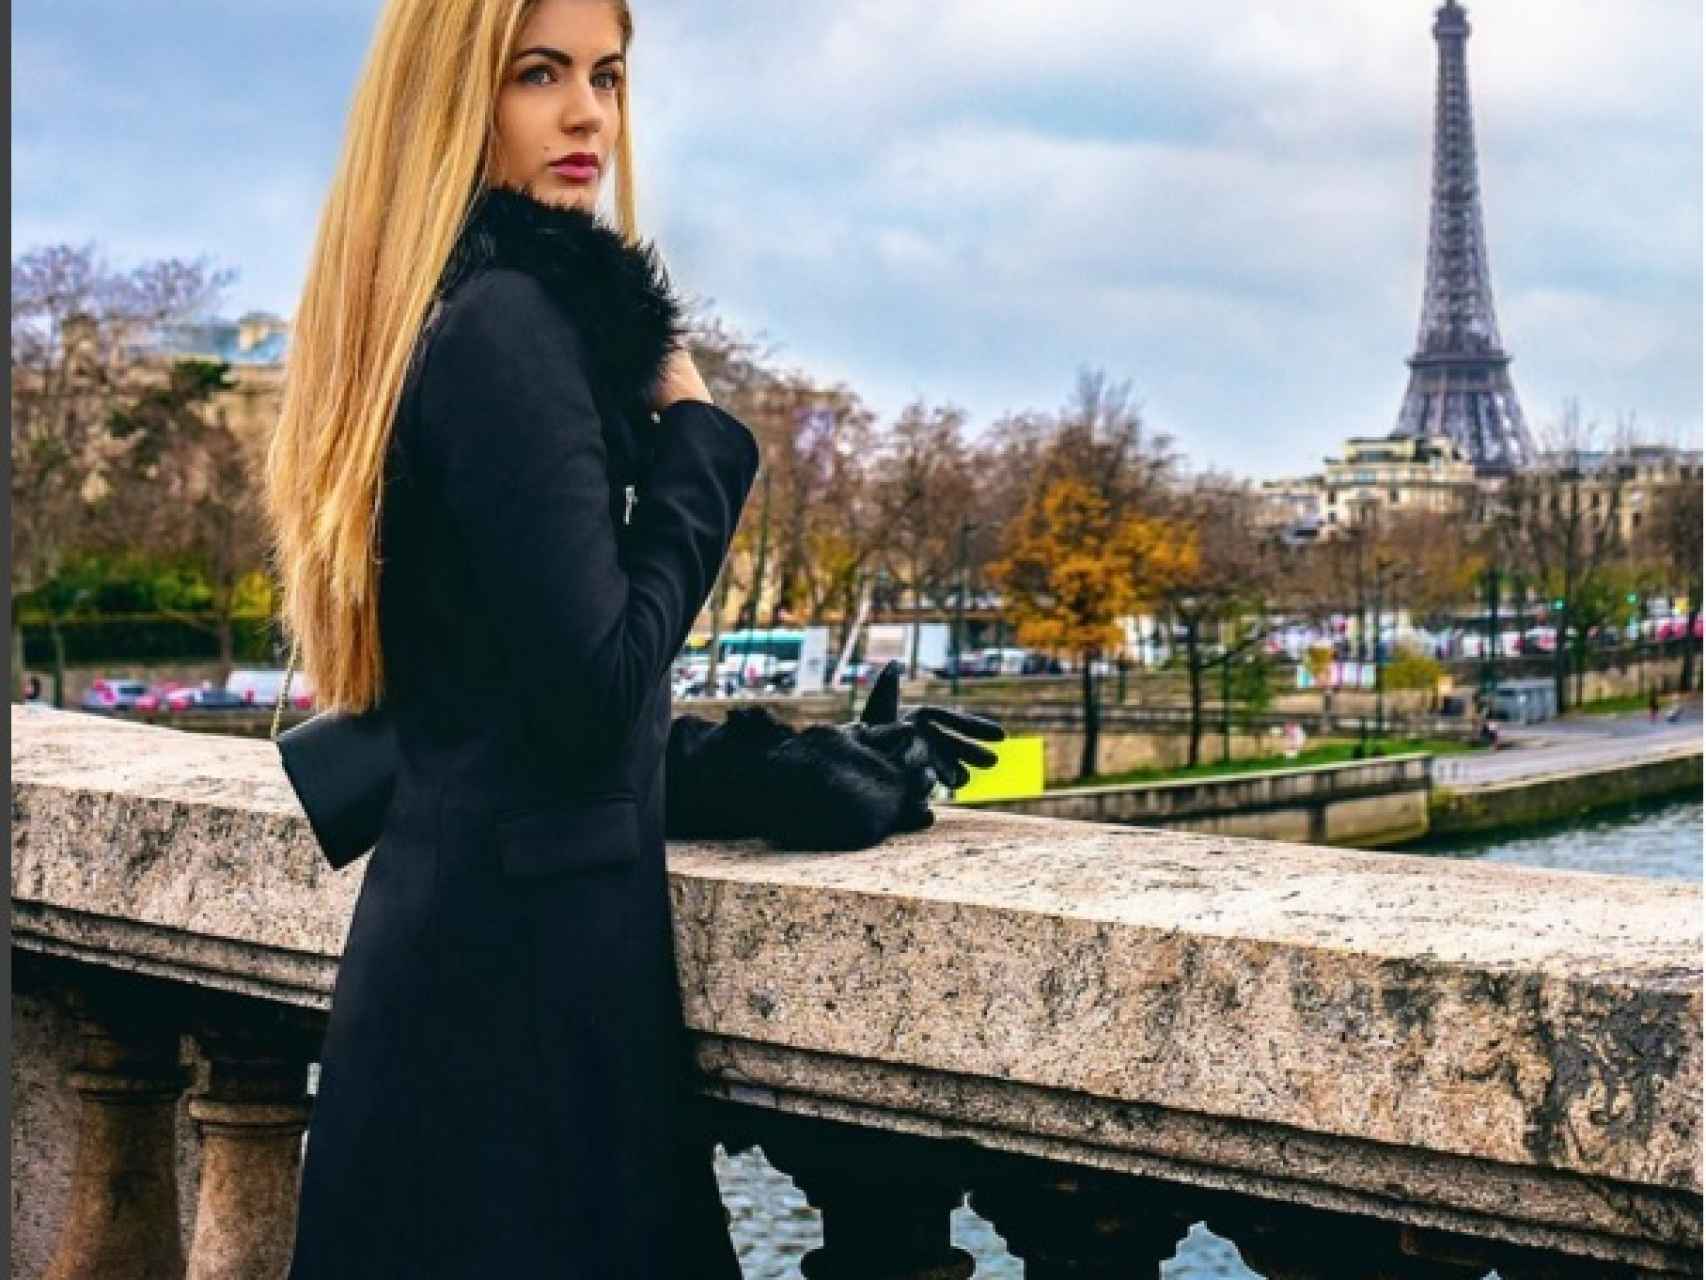 La modelo ha colgado esta imagen frente a Torre Eiffel